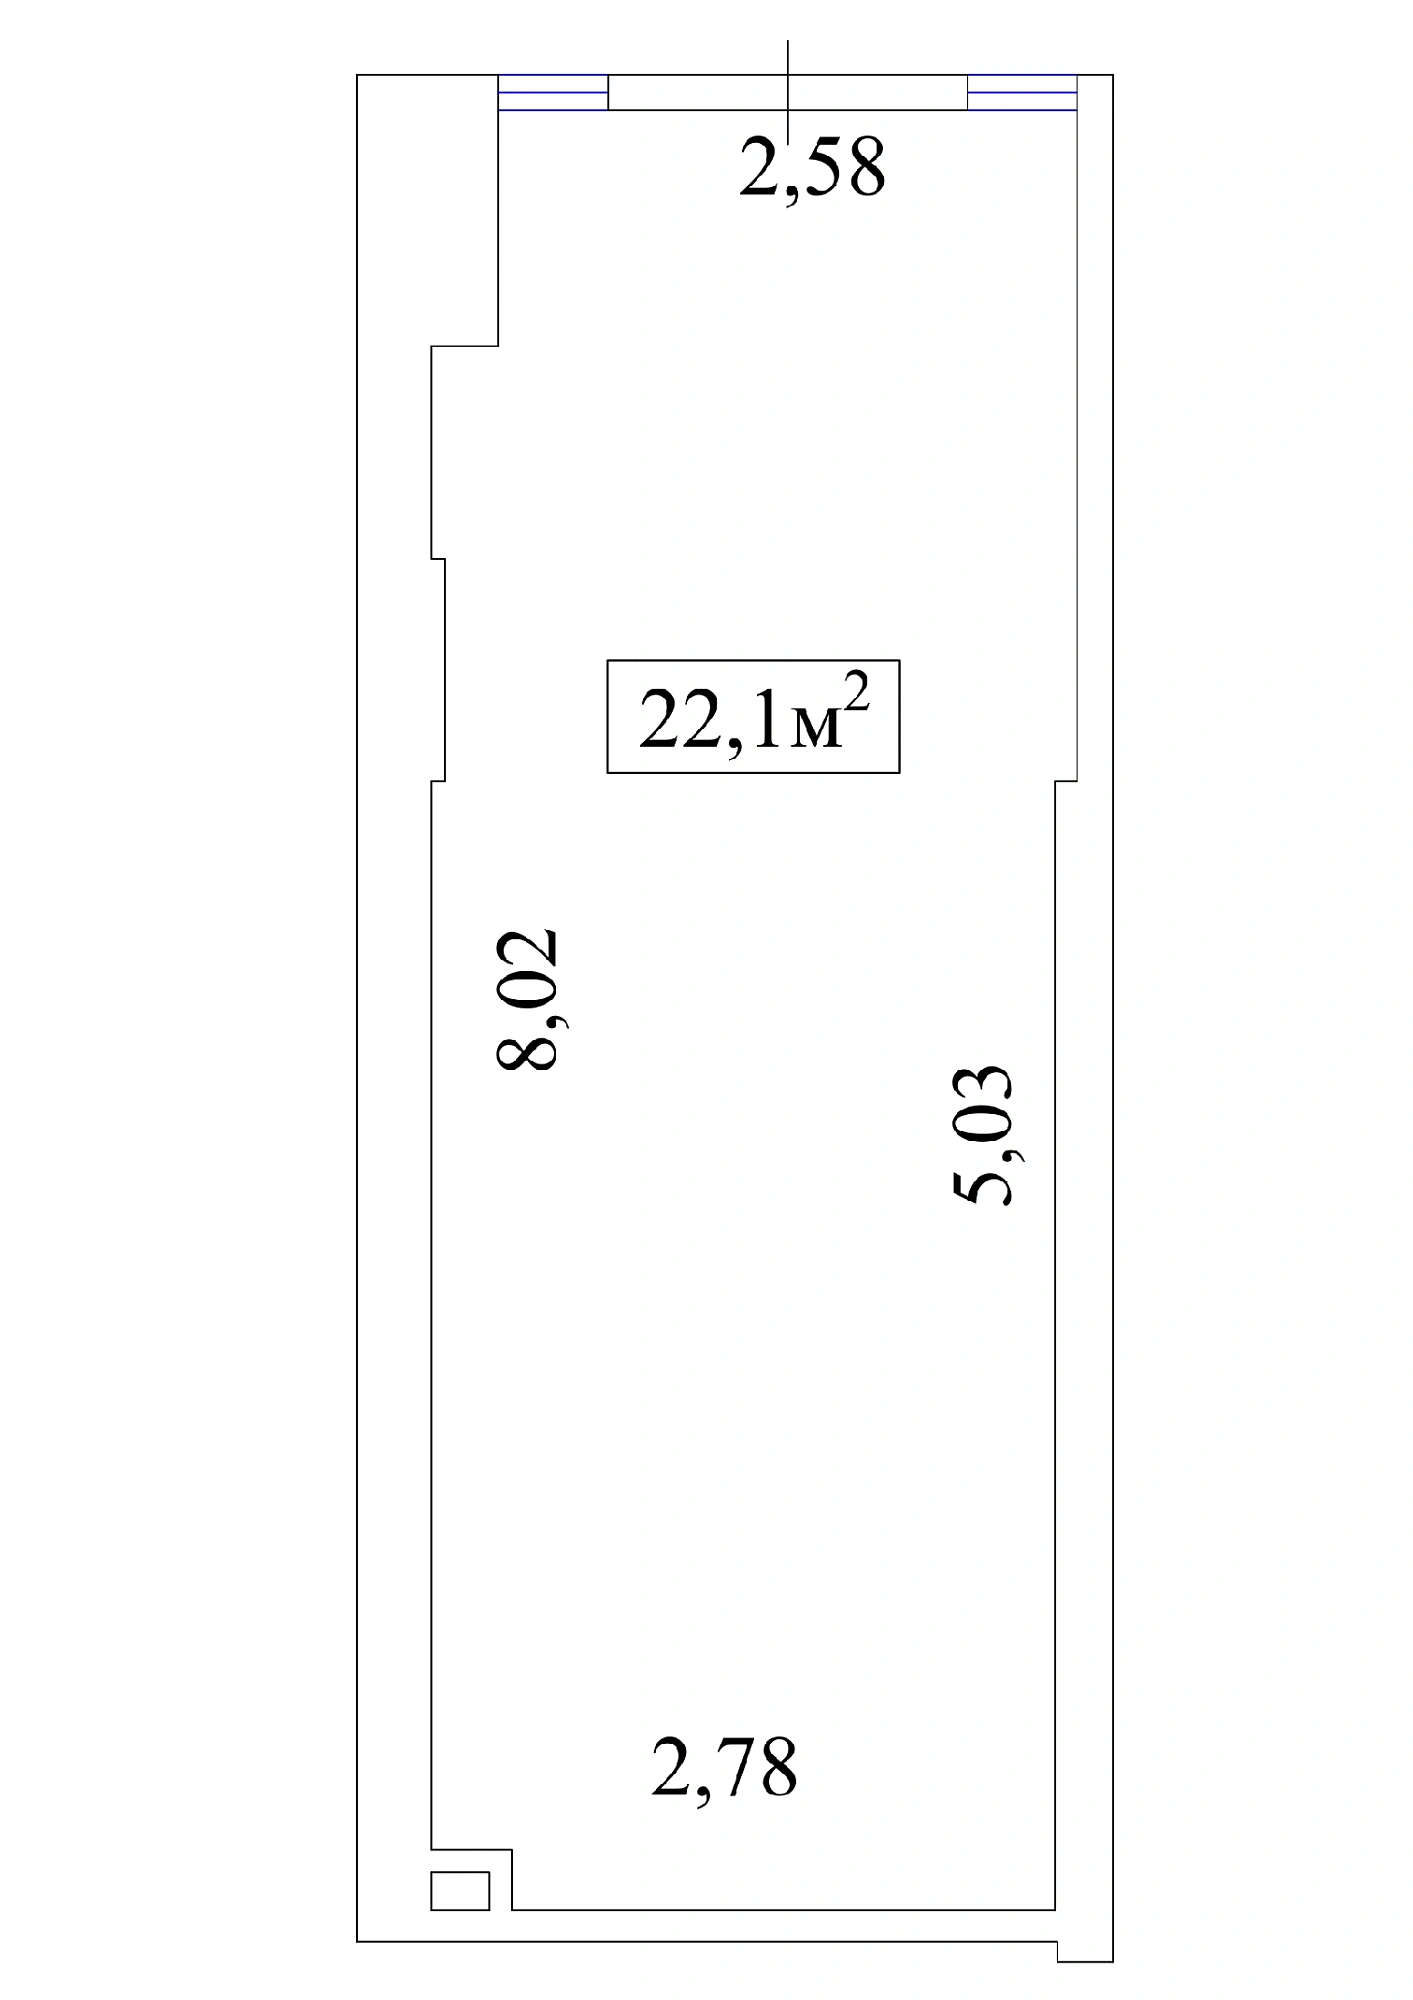 Планировка Коммерческие площей 22.1м2, AB-01-01/Т004а.